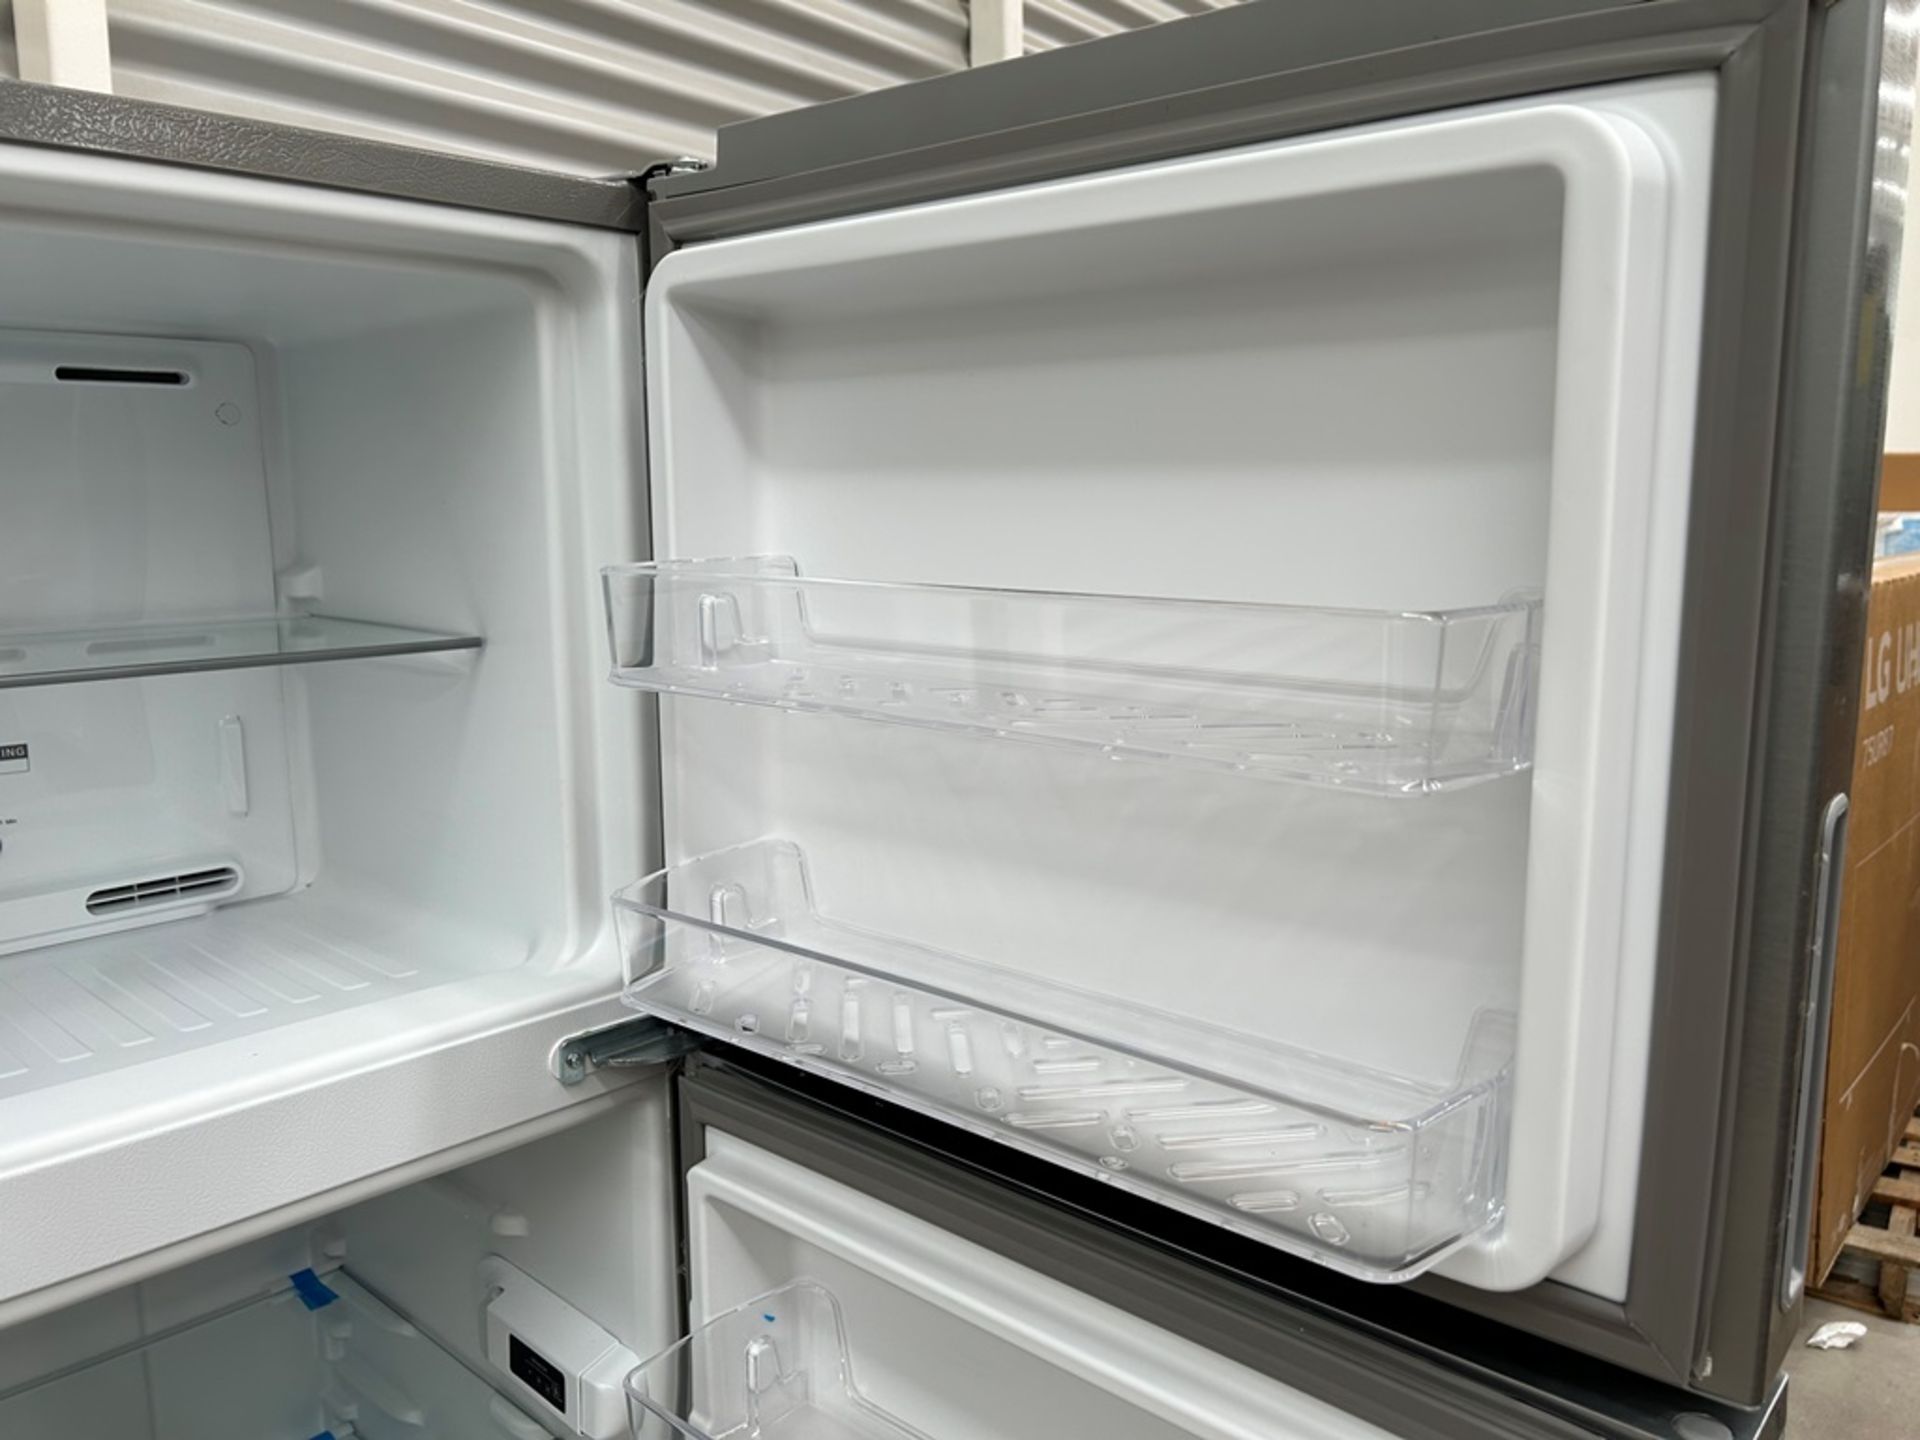 Lote de 2 refrigeradores contiene: 1 Refrigerador Marca WHIRPOOL, Modelo WT1230K, Serie 91306, Colo - Image 6 of 17